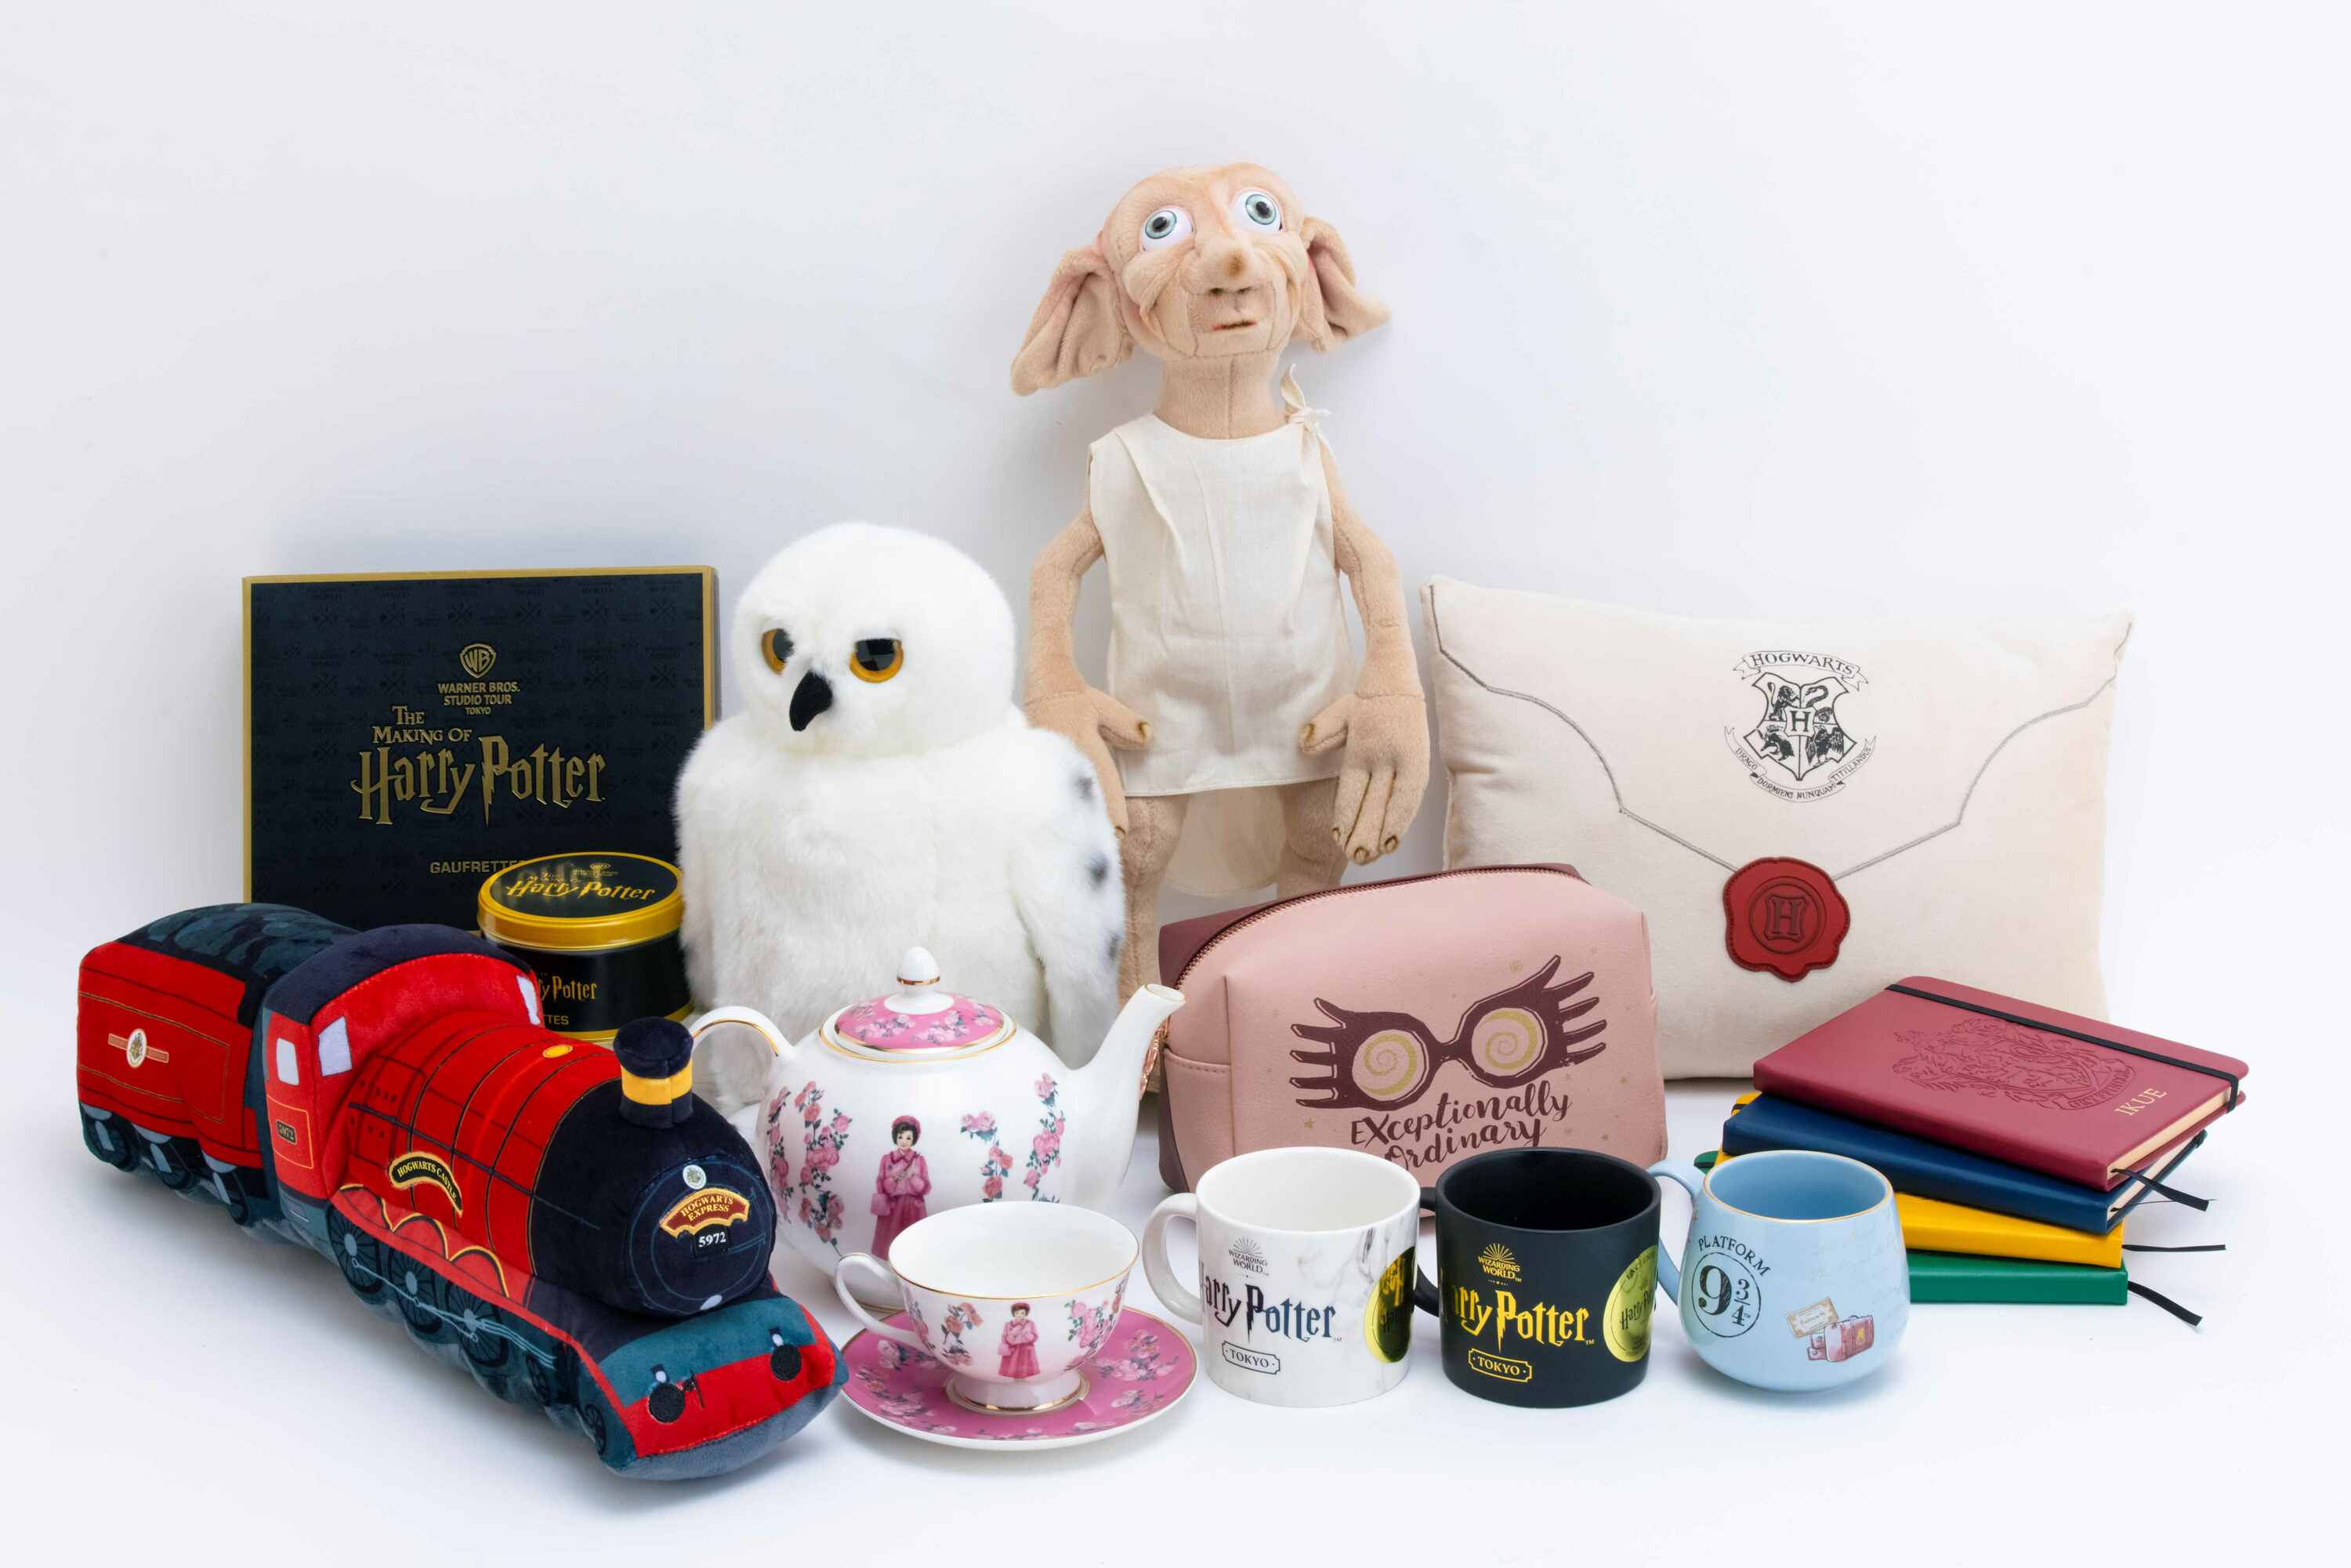 Warner Bros Studio Tour Tokyo sells Tokyo-exclusive Harry Potter merch